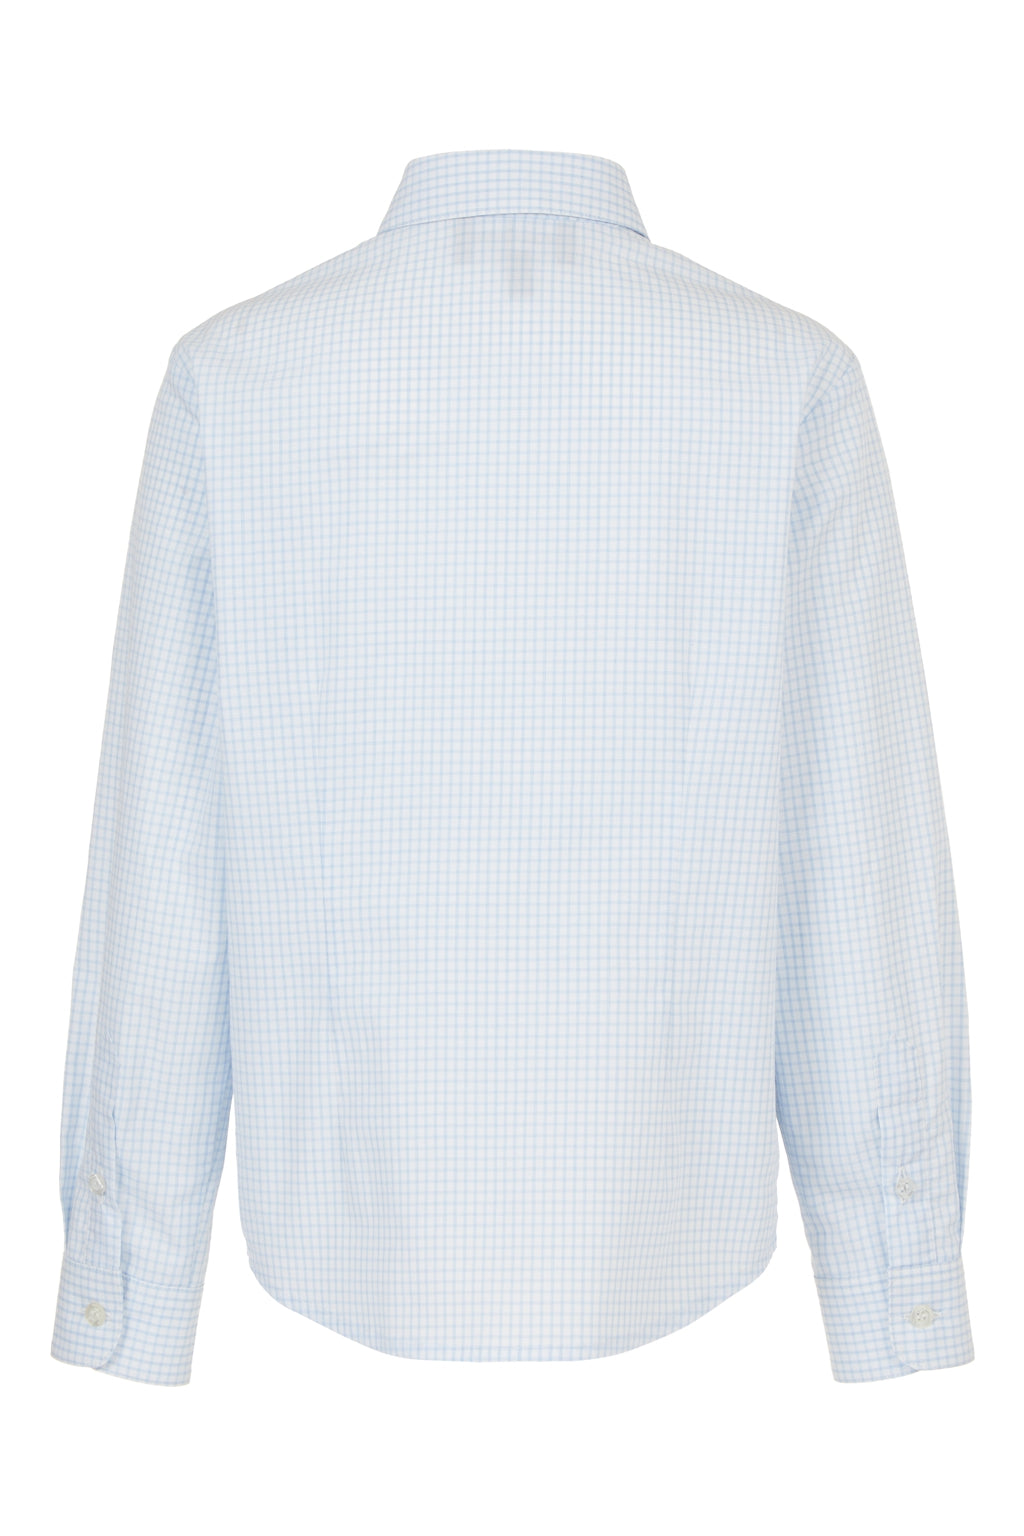 Emporio Armani Boys White Check Dress Shirt_ 3D4C09-4N89Z